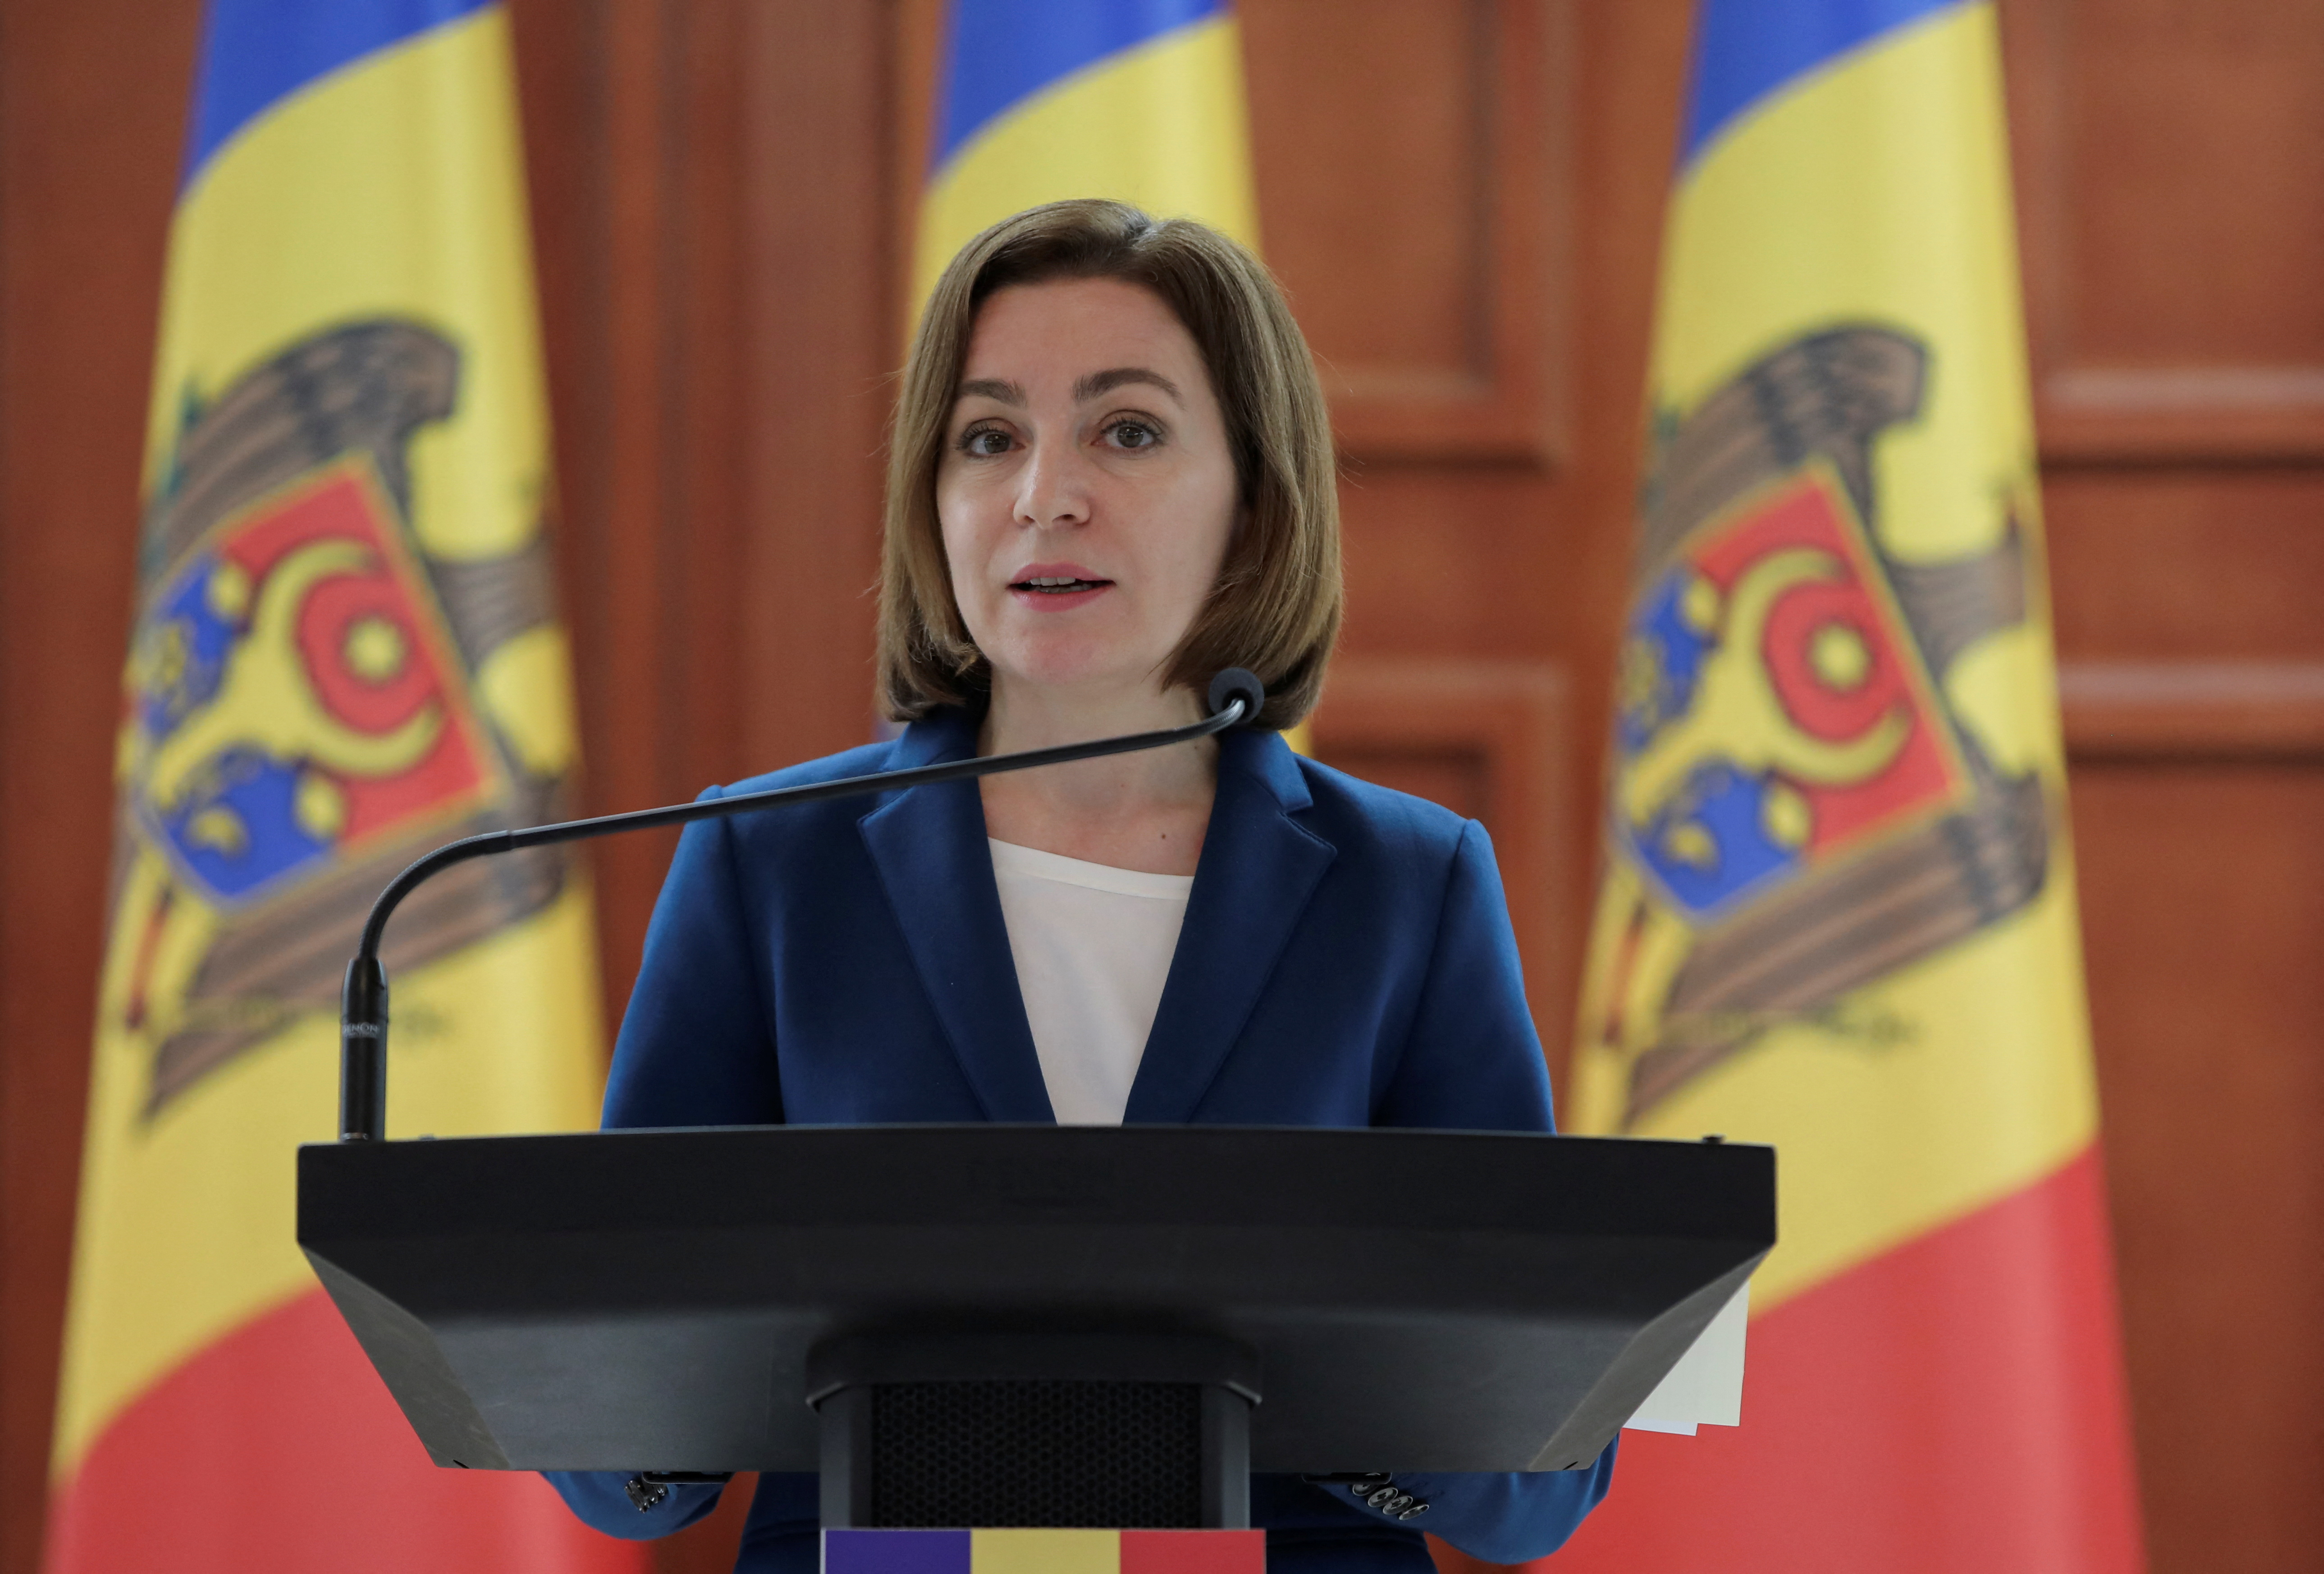 Moldavia espera unirse a la Unión Europea “lo antes posible” para protegerse de las amenazas de Rusia